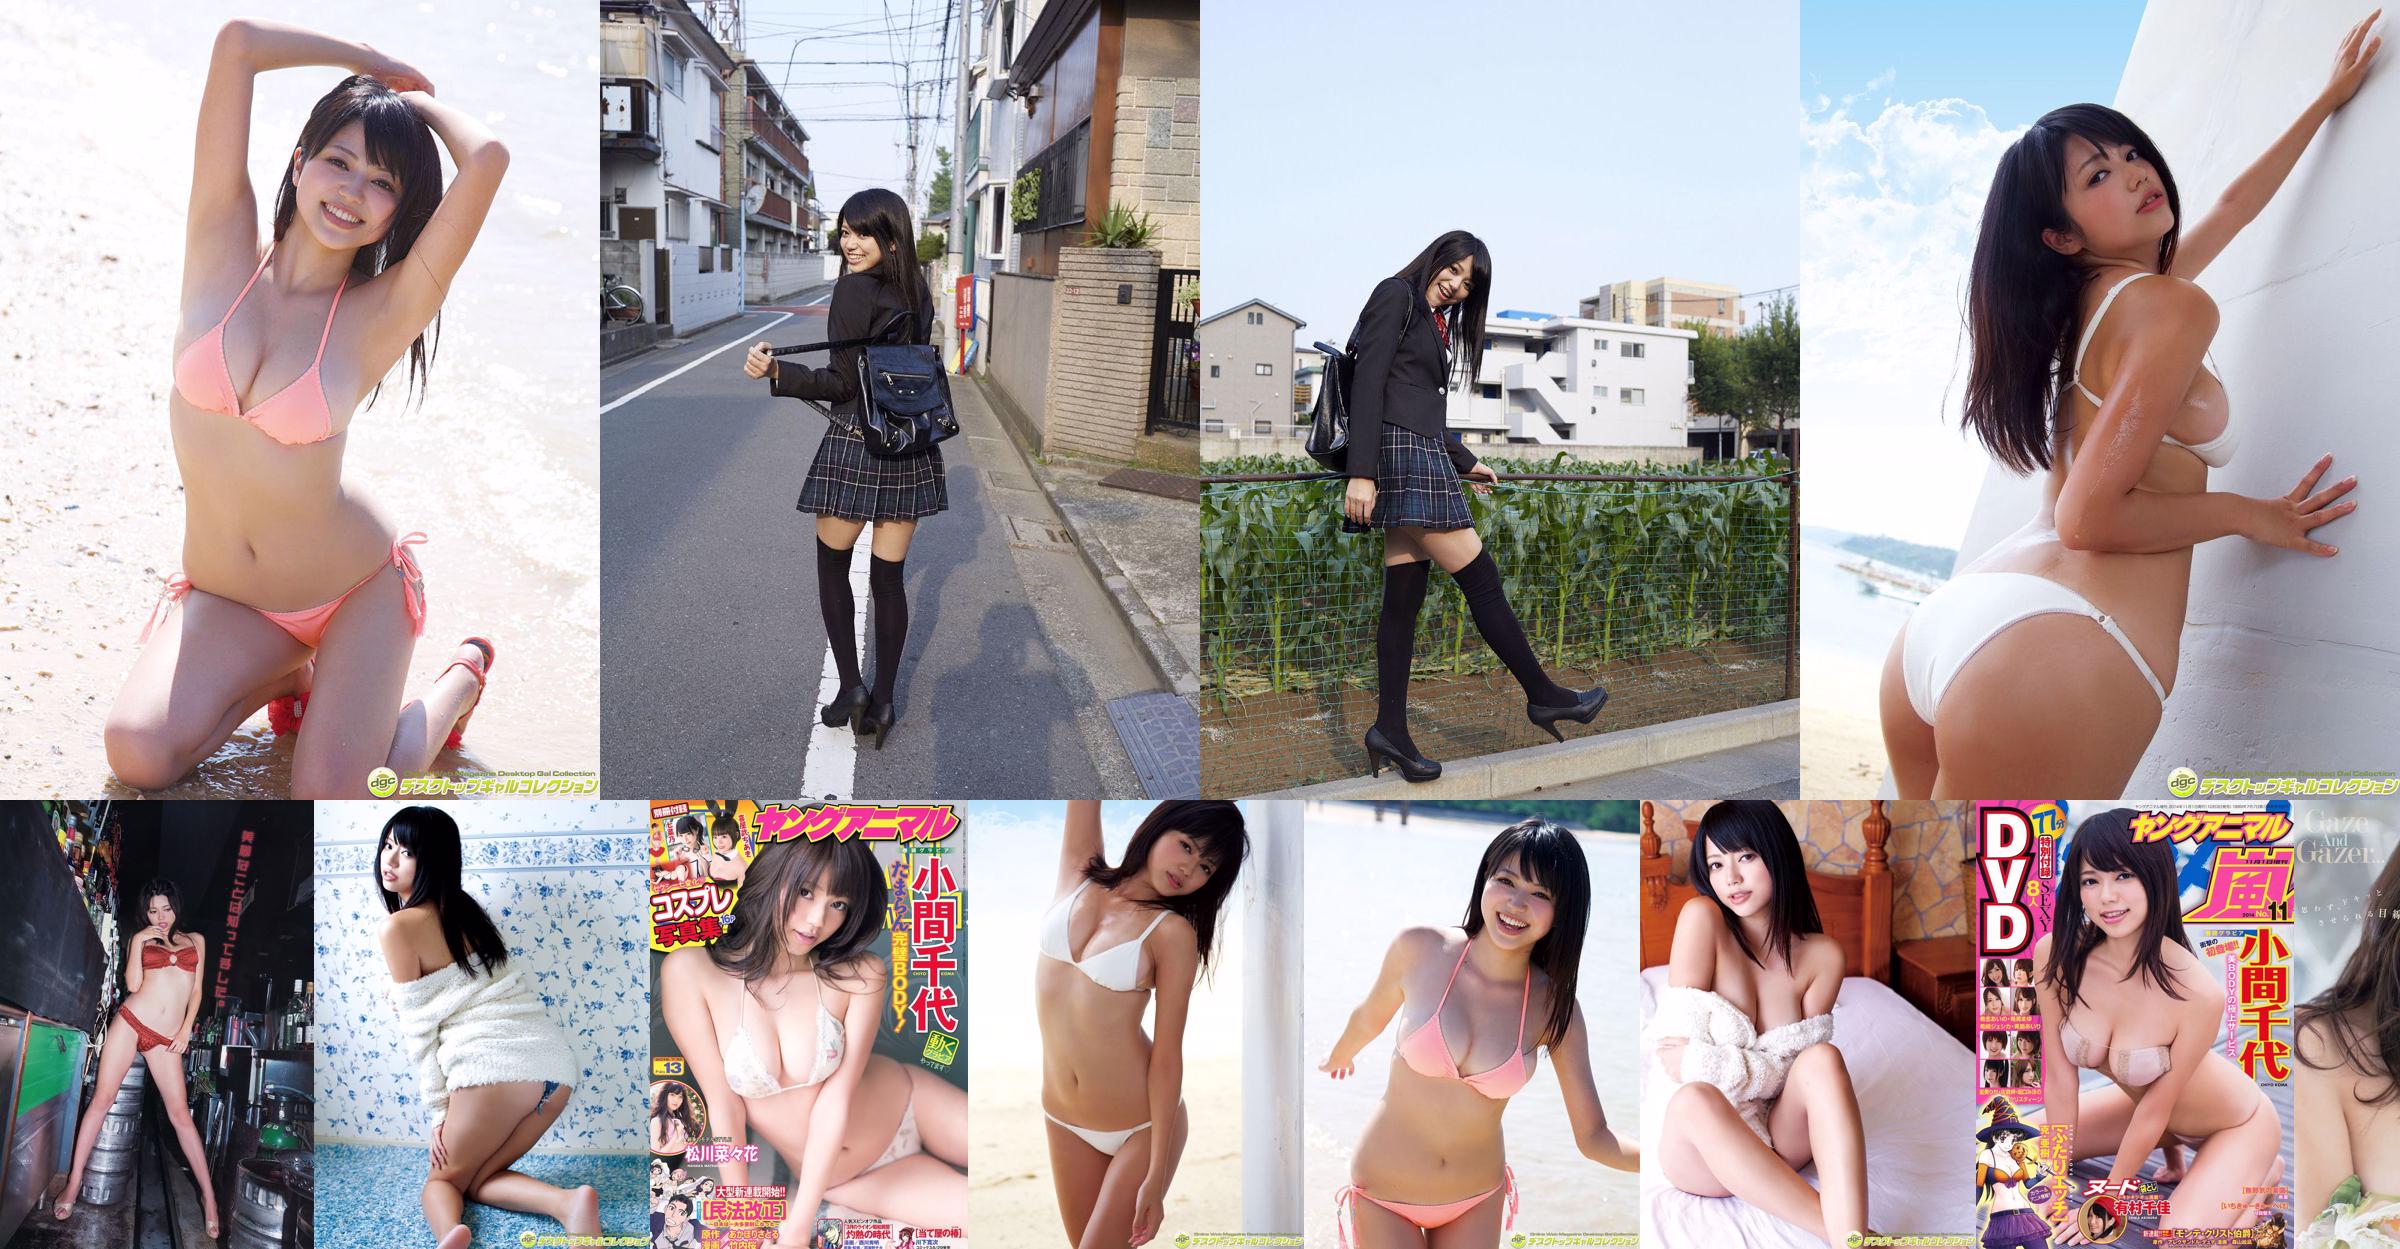 Chiyo Koma [Young Animal Arashi Special Issue] No.11 2014 Photo Magazine No.96ff3b Seite 1